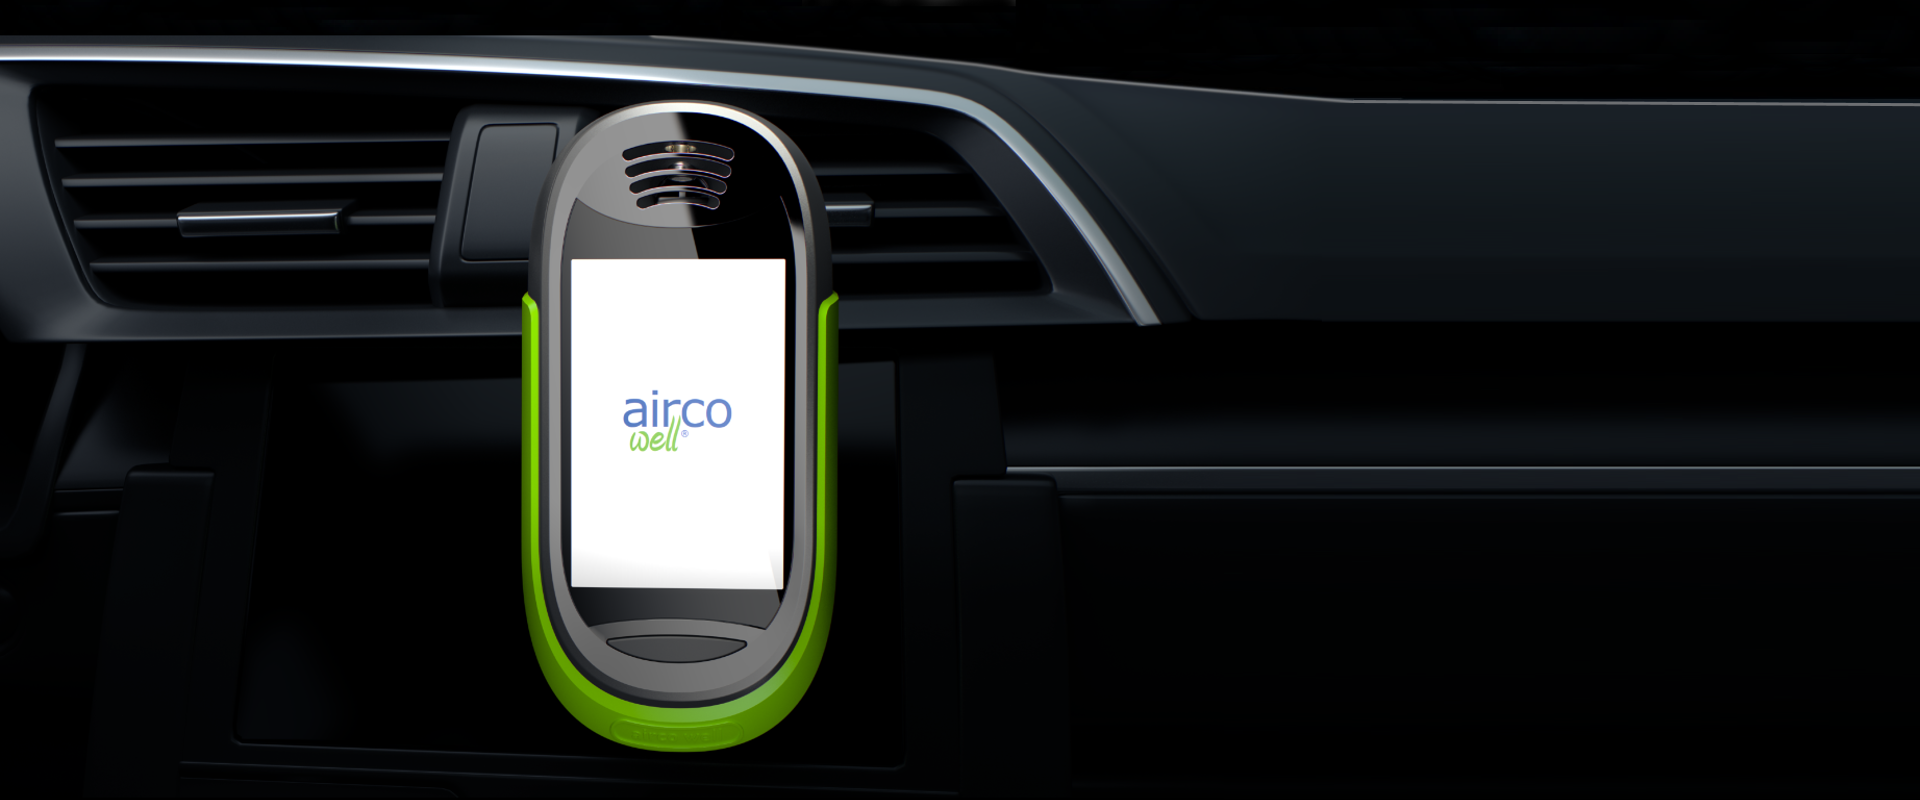 airco well®-sensorn <br> gör det osynliga synligt